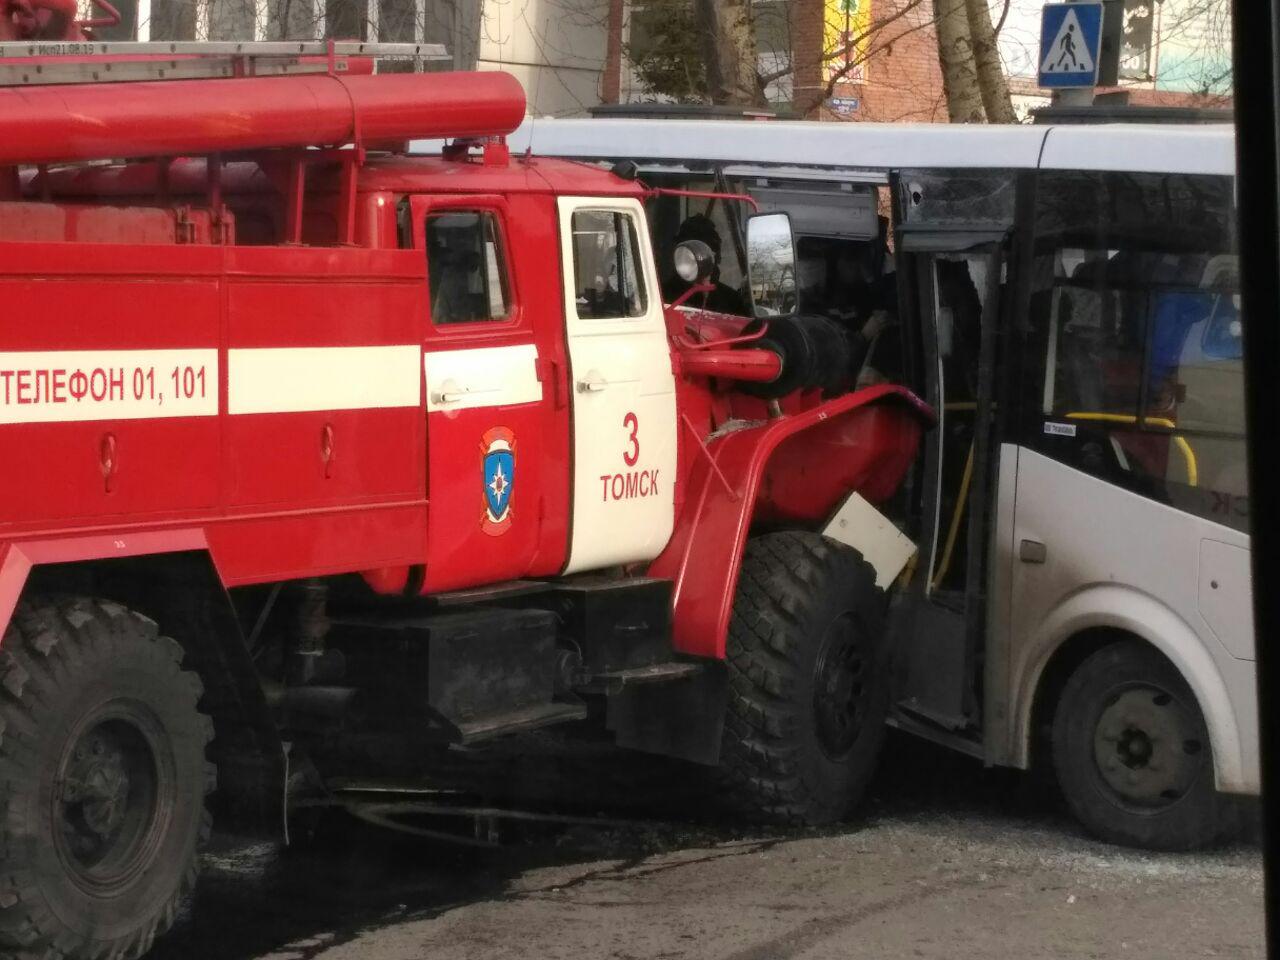 Происшествия, Томские новости, авария ДТП пожраная и пазик маршрутка врезались столкнулись пострадали Пожарная машина столкнулась с автобусом в Томске (ФОТО)